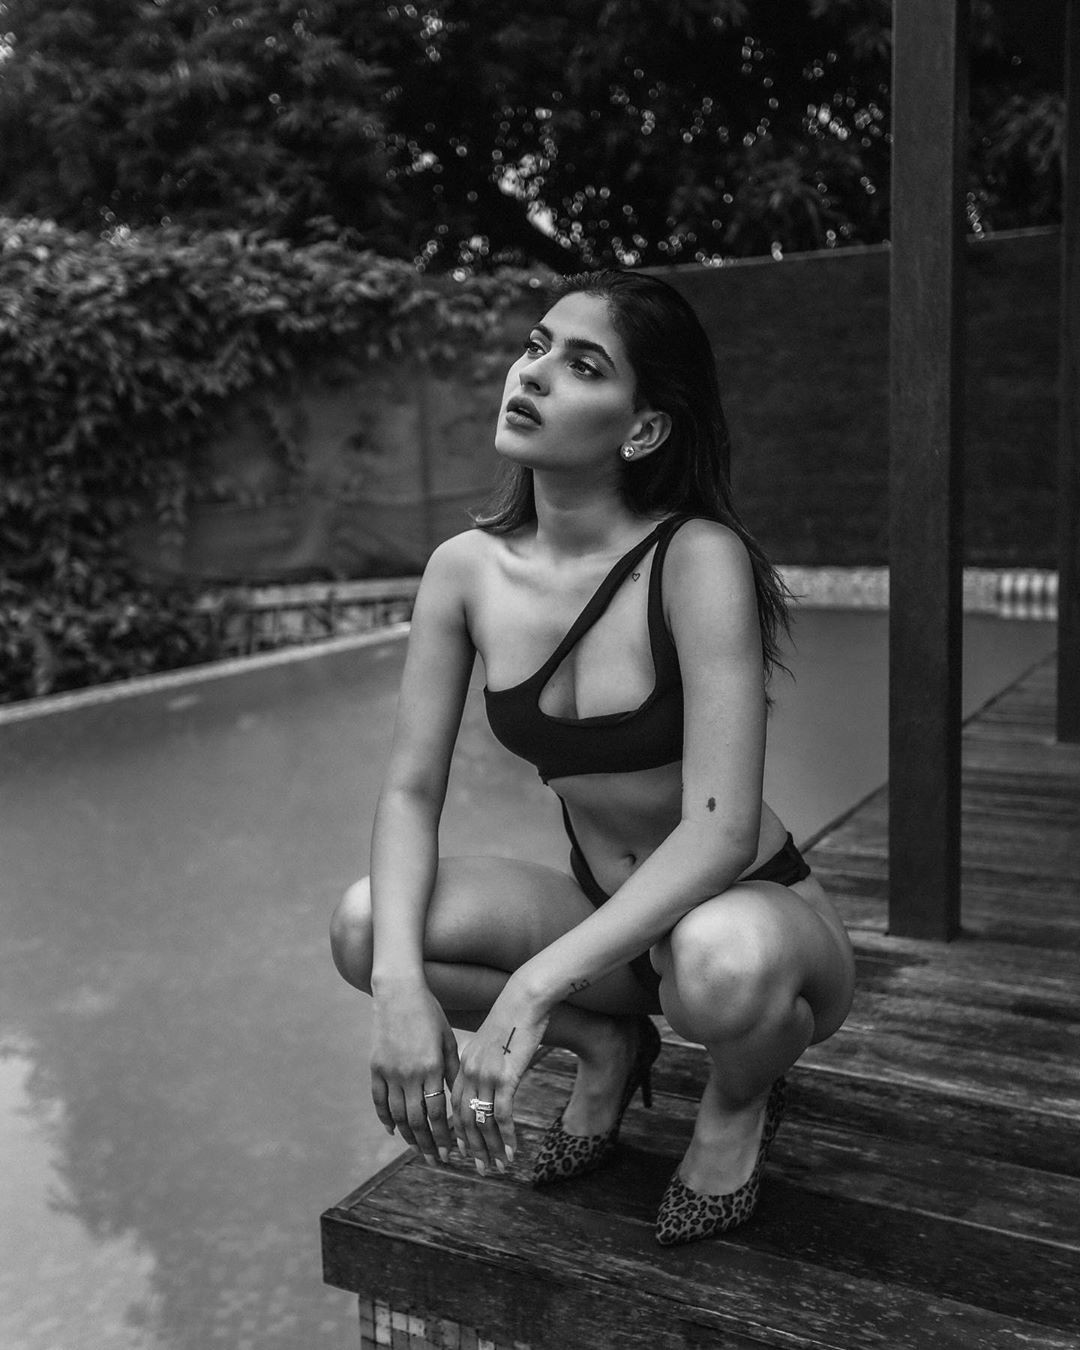 ¡Guau! Mira estos increíbles karishma sharma hot, Ragini MMS: Devoluciones: Modelos calientes de Instagram,  Karishma Sharma  